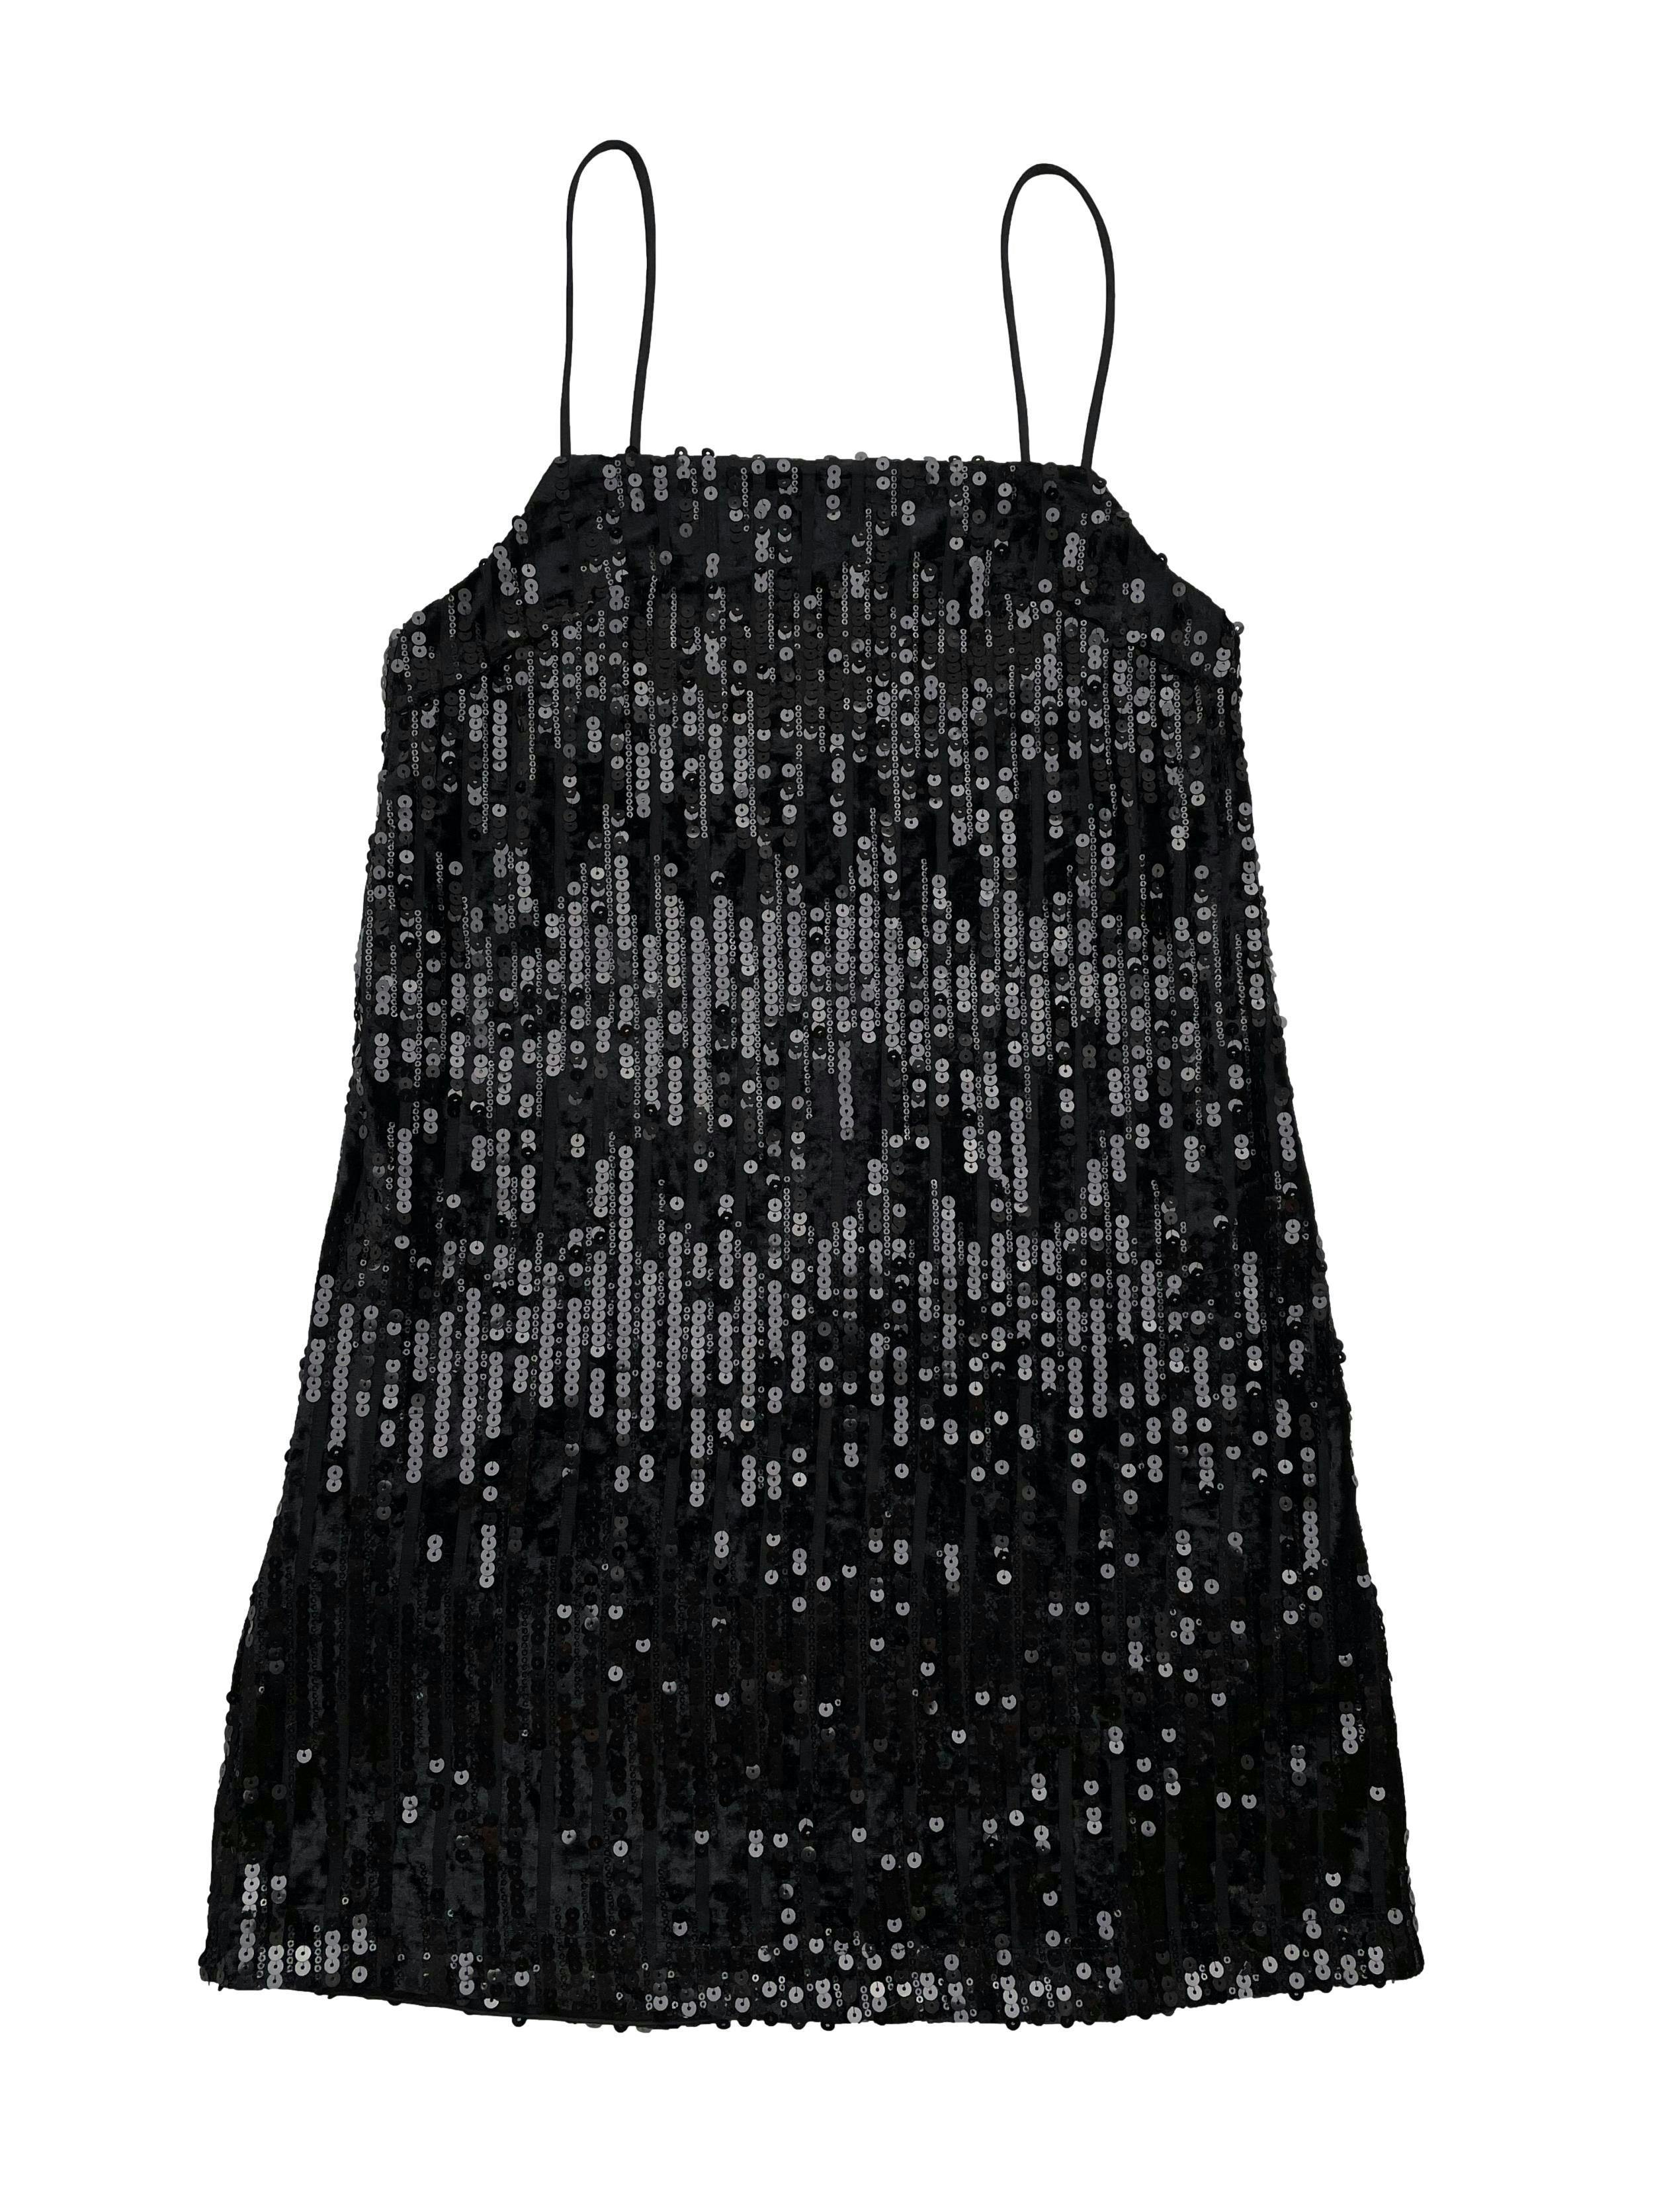 Vestido H&M de mesh negro con franjas de plush y mostacillas, forrado. Busto 90cm Largo 88cm